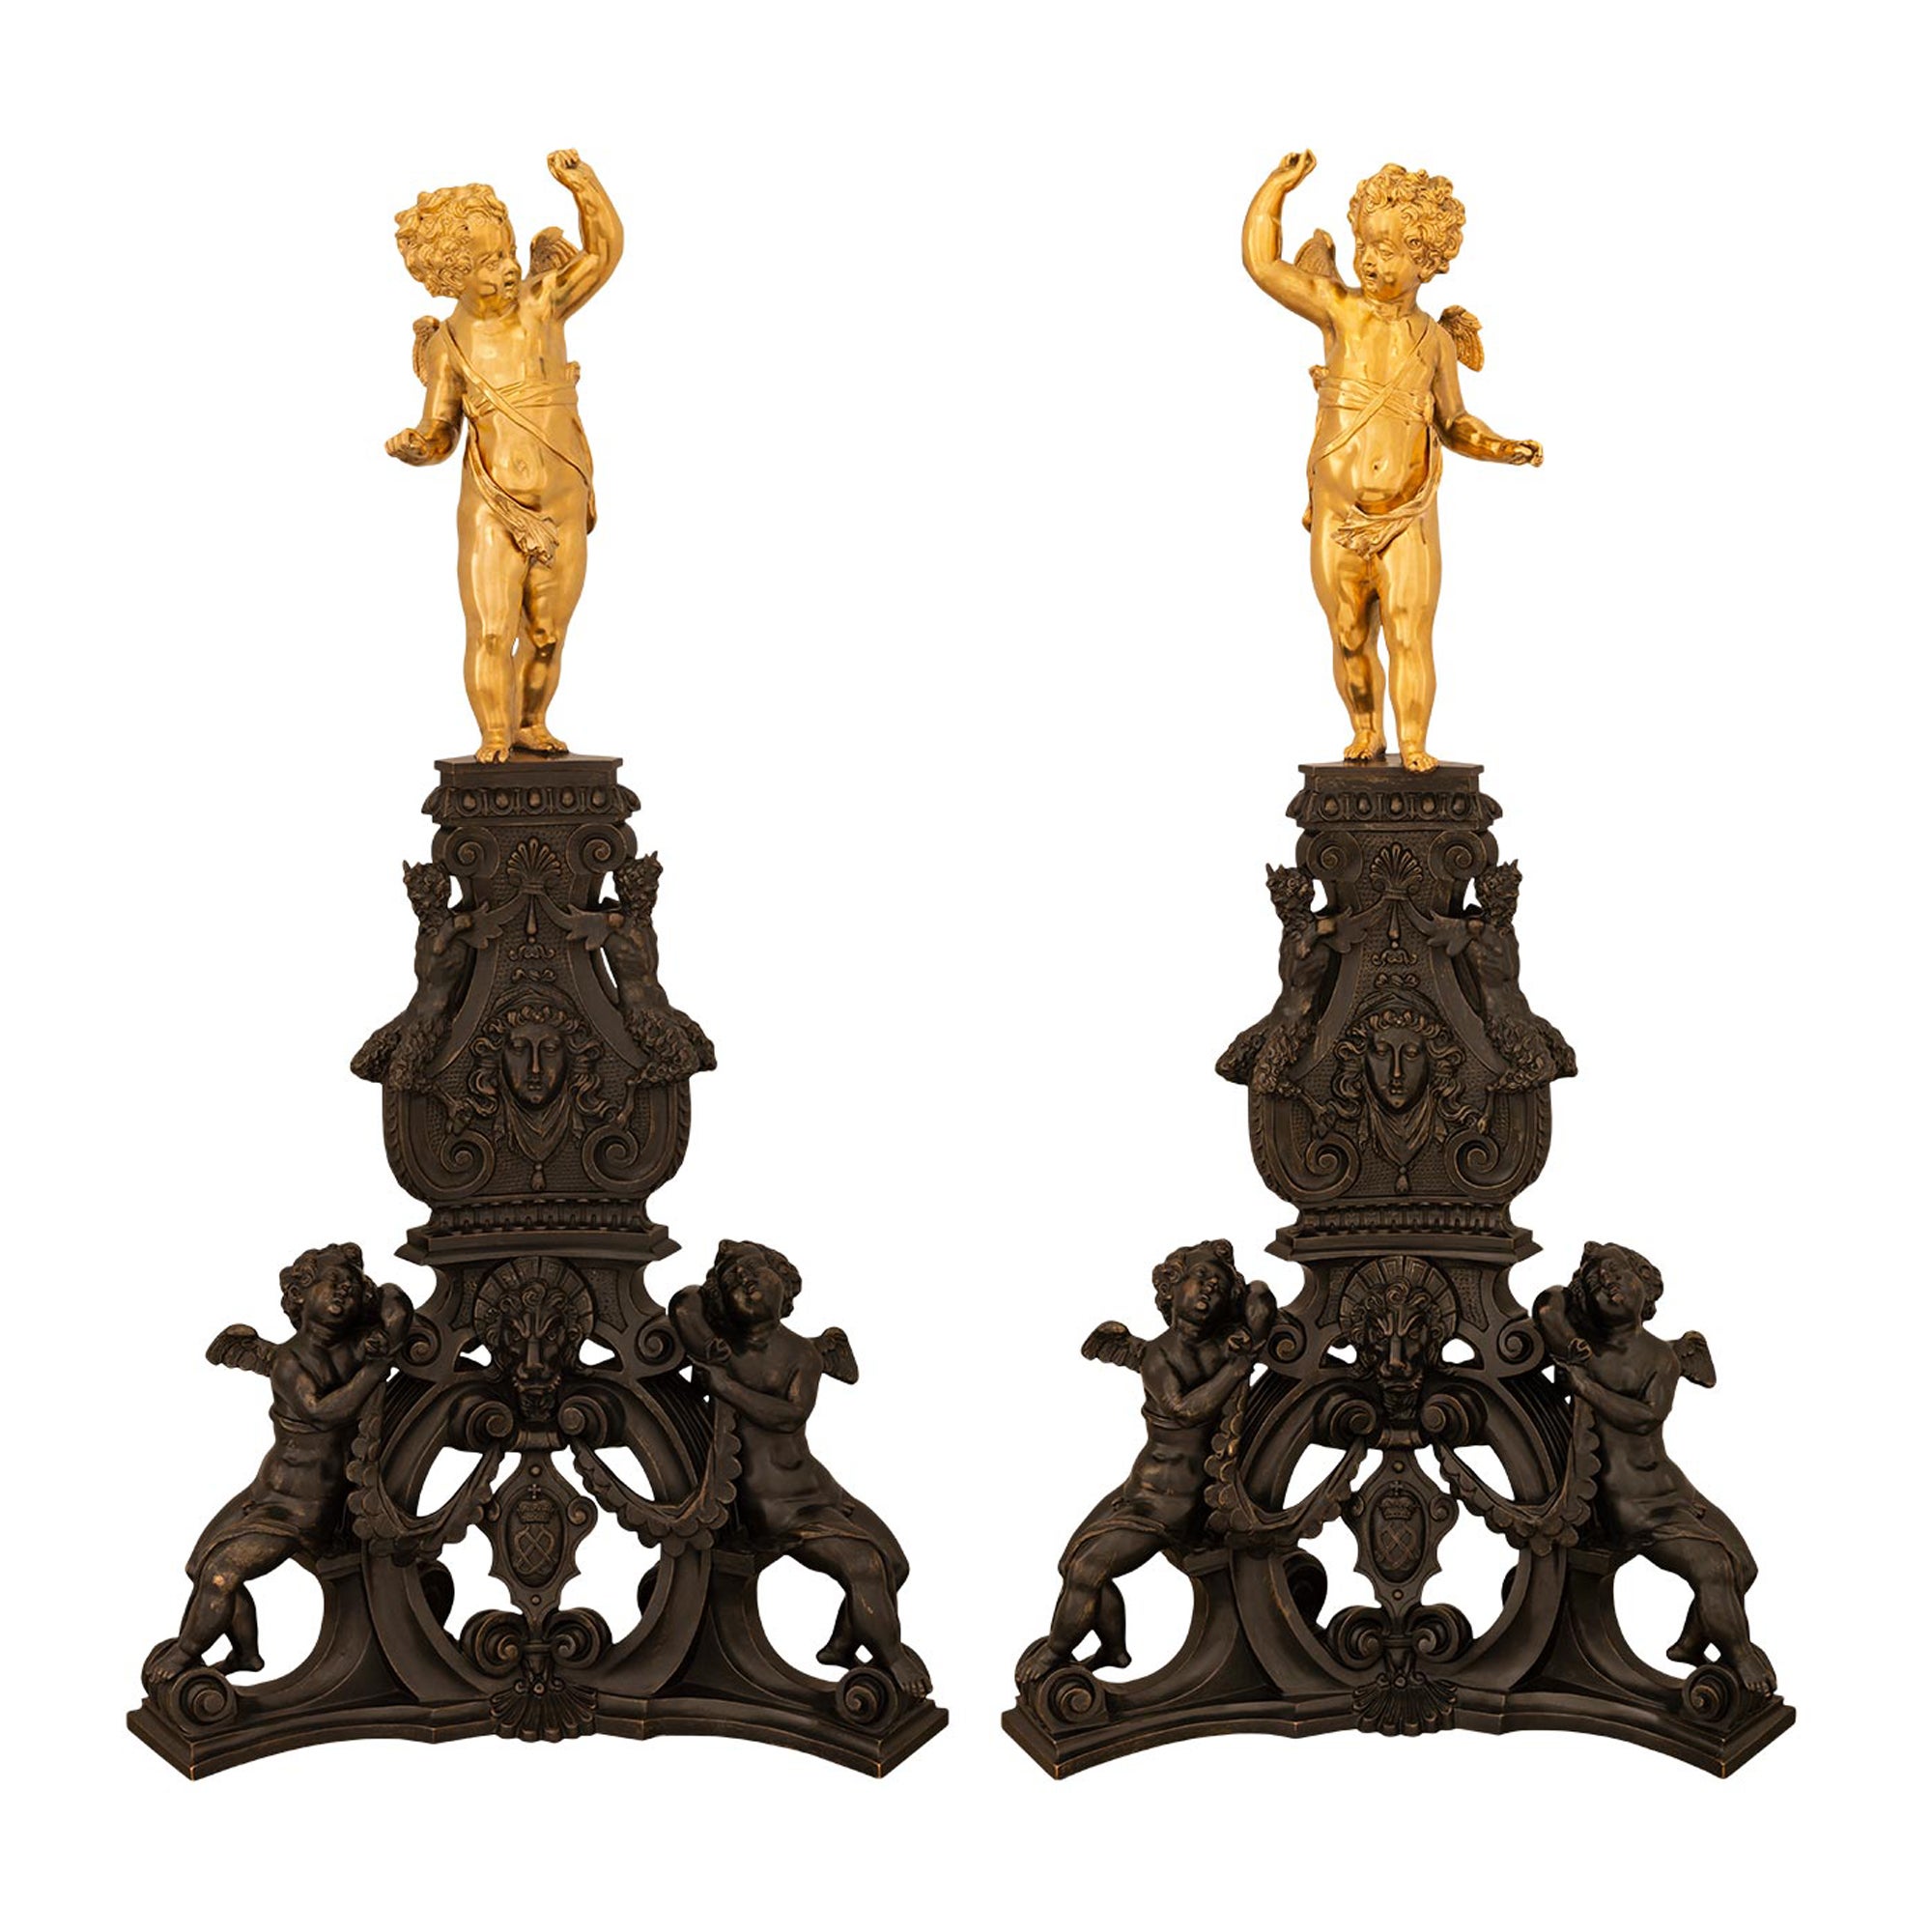 True True, Paar französische Feuerböcke aus Goldbronze und Bronze aus der Zeit Napoleons III. des 19. Jahrhunderts